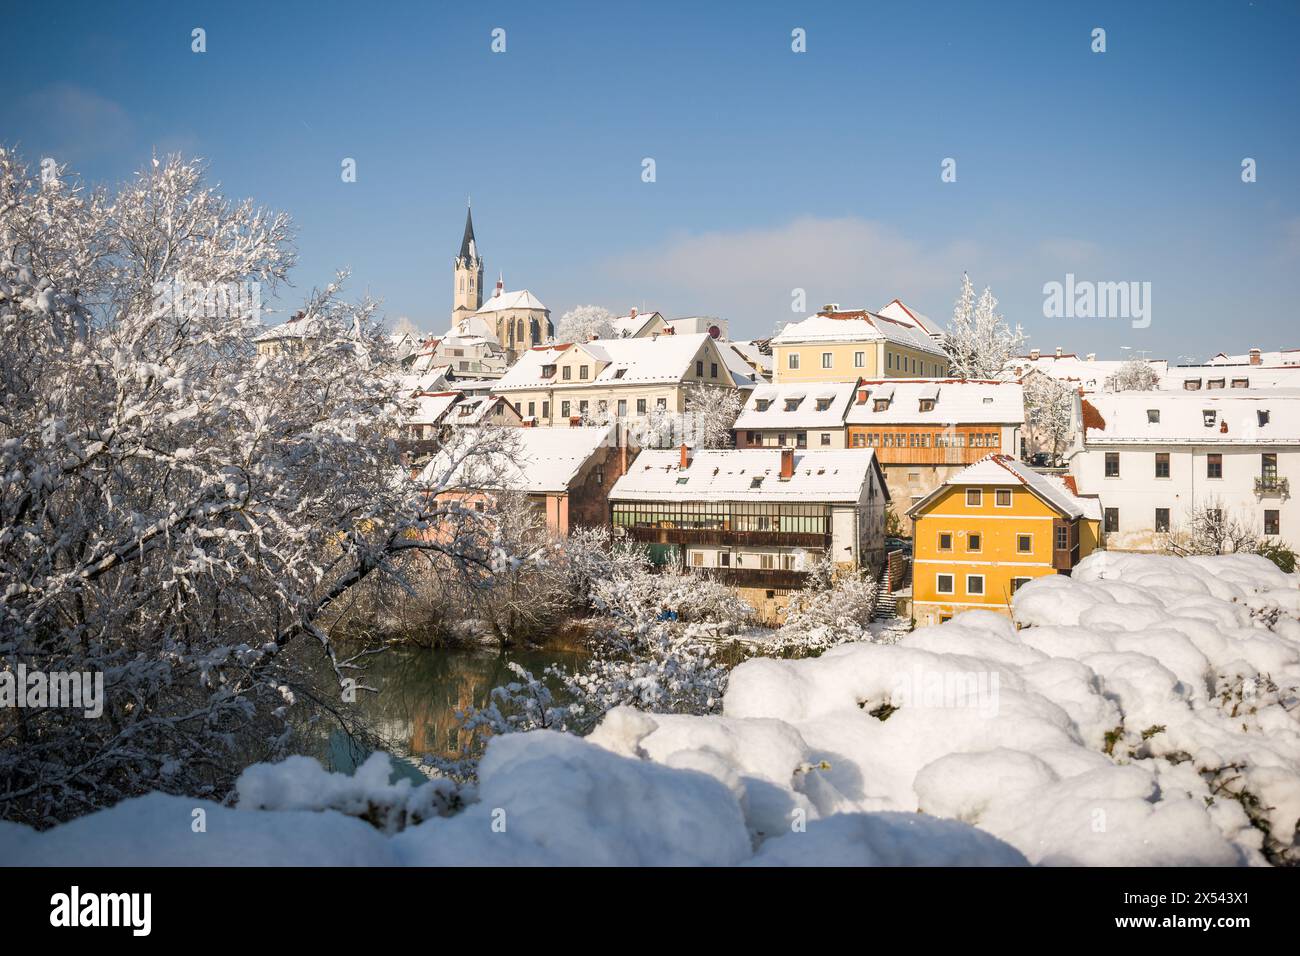 Novo mesto, région de Dolenjska, Slovénie. Ville couverte de neige à la journée ensoleillée Banque D'Images